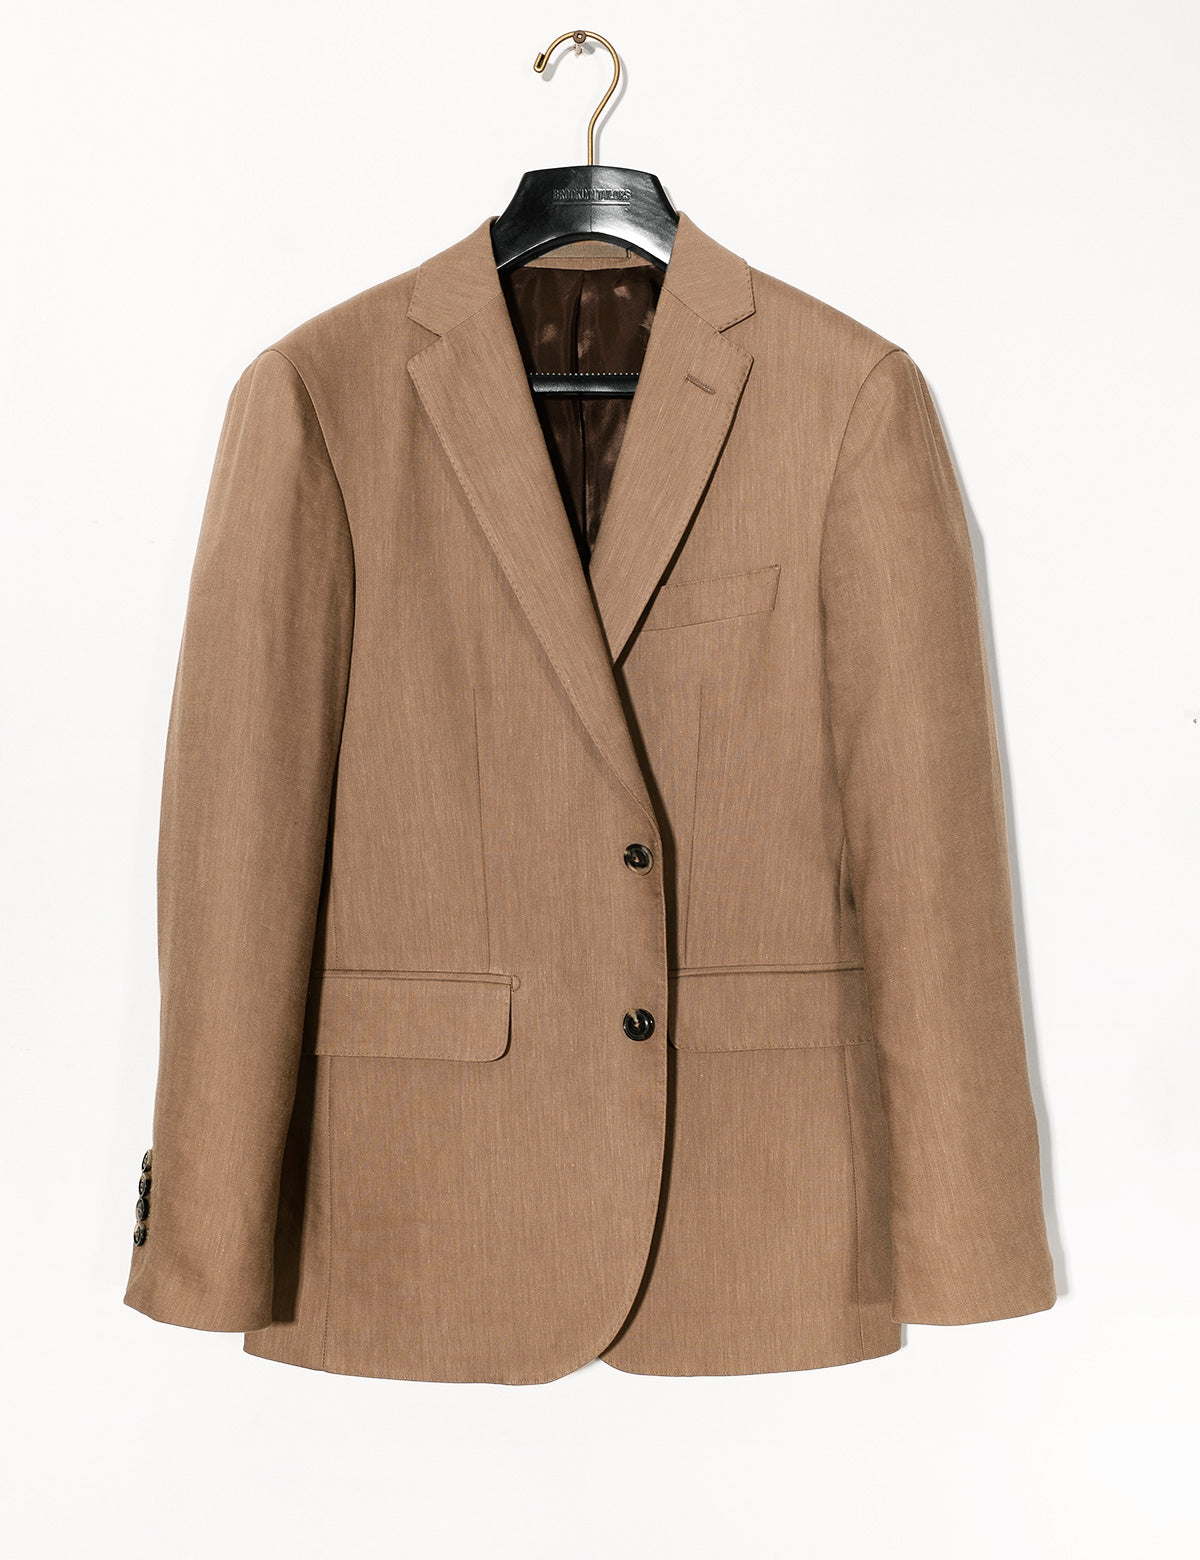 Brooklyn Tailors BKT50 Tailored Jacket in Wool Linen - Sahara full length shot on hanger